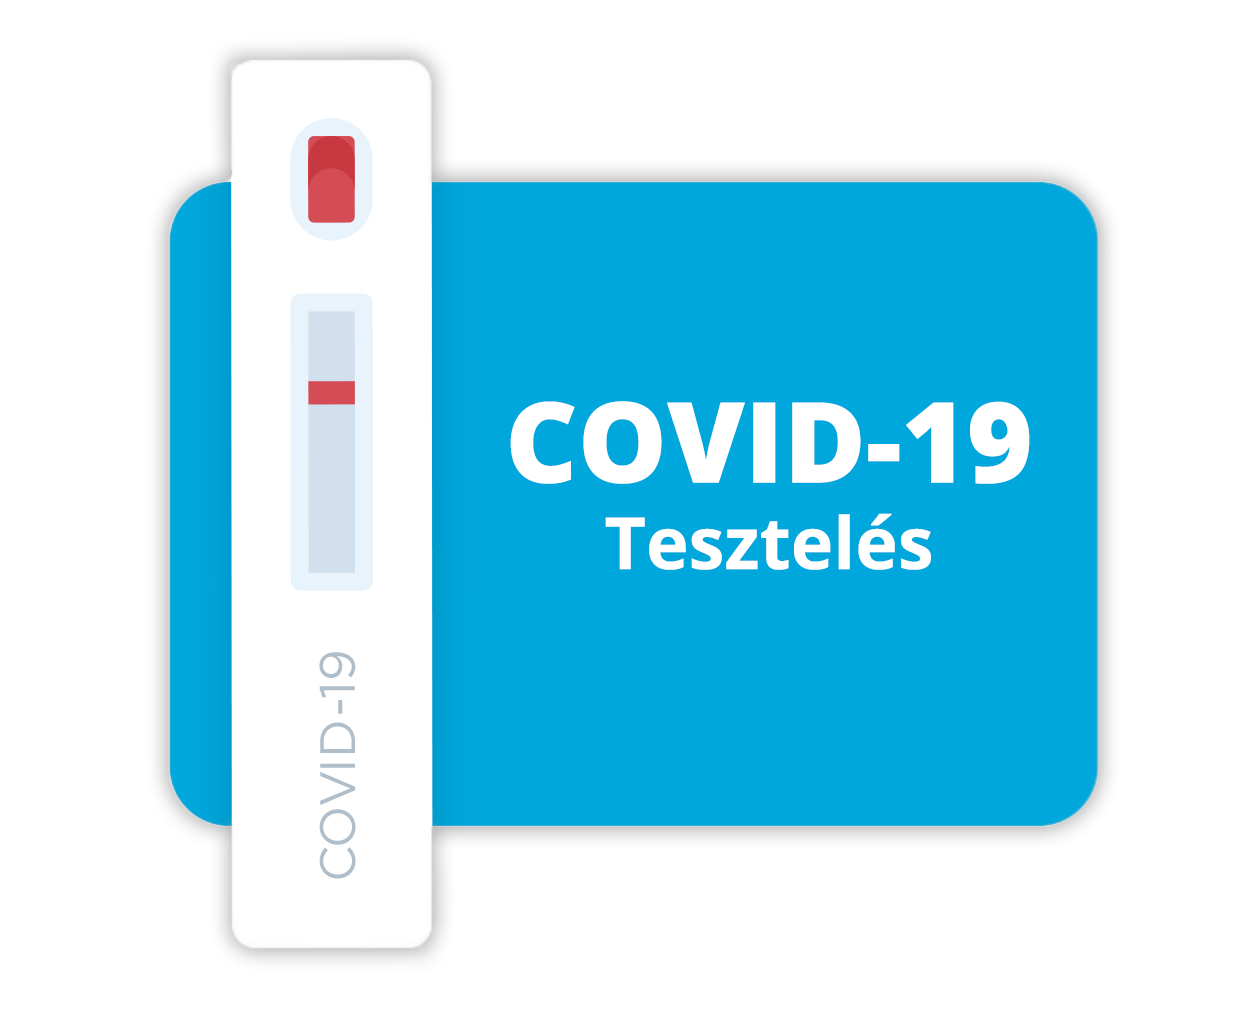 COVID-19 tesztelés